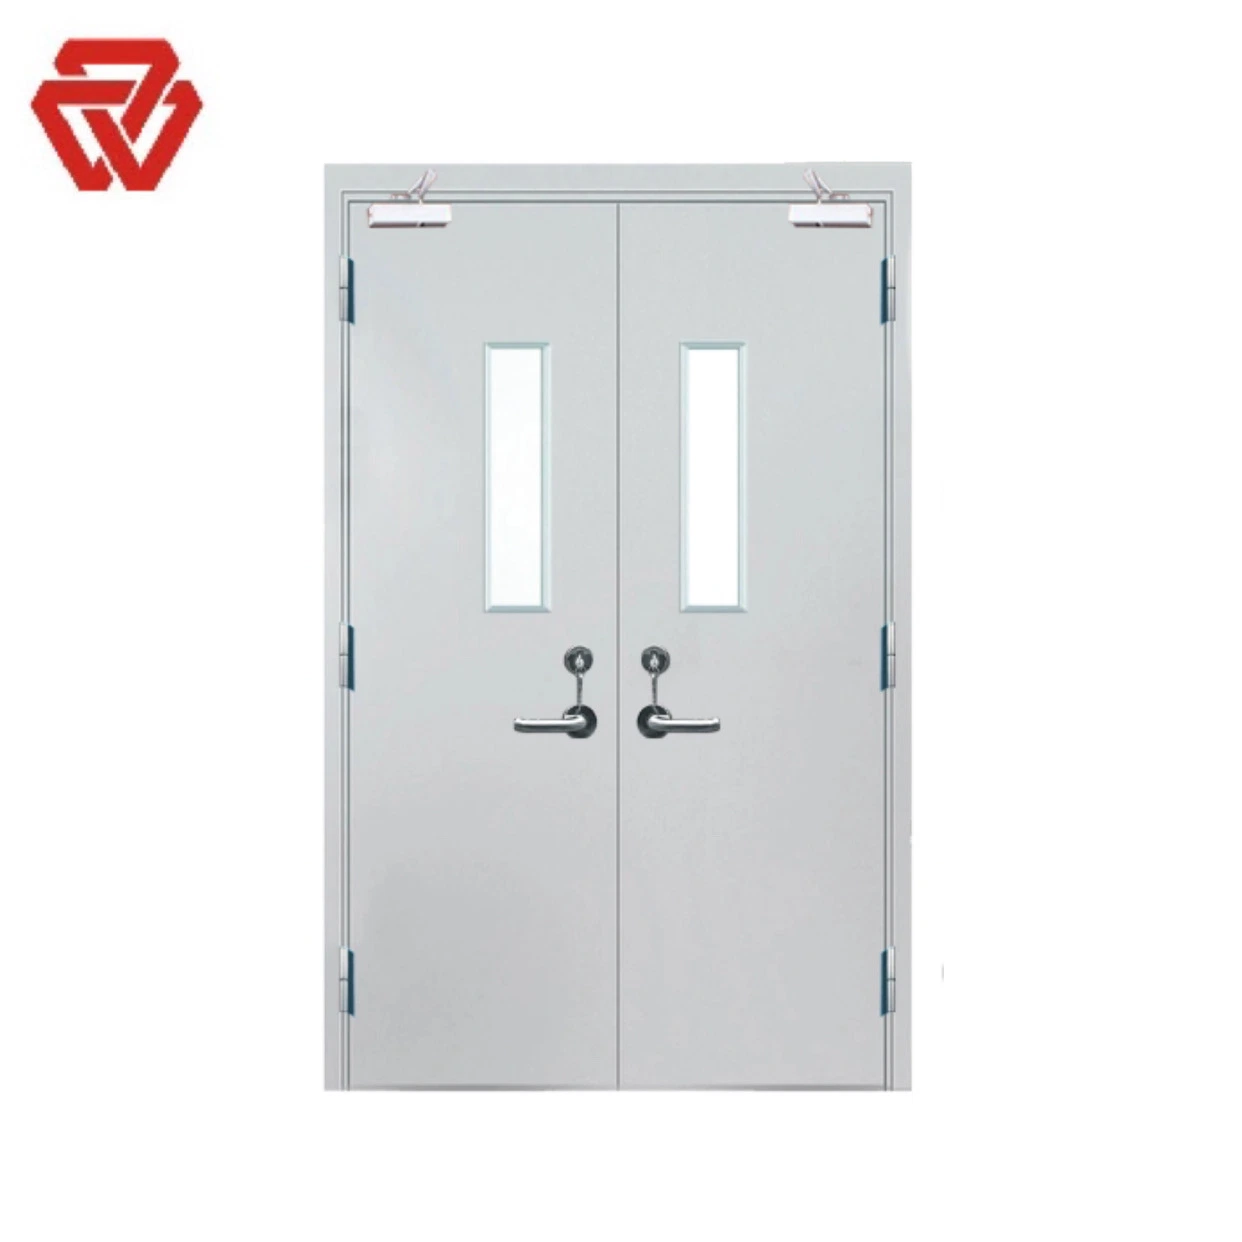 UL Quality Steel Entrance Solid Door, Emergency Exit Fire Rated Door for Hotel / School